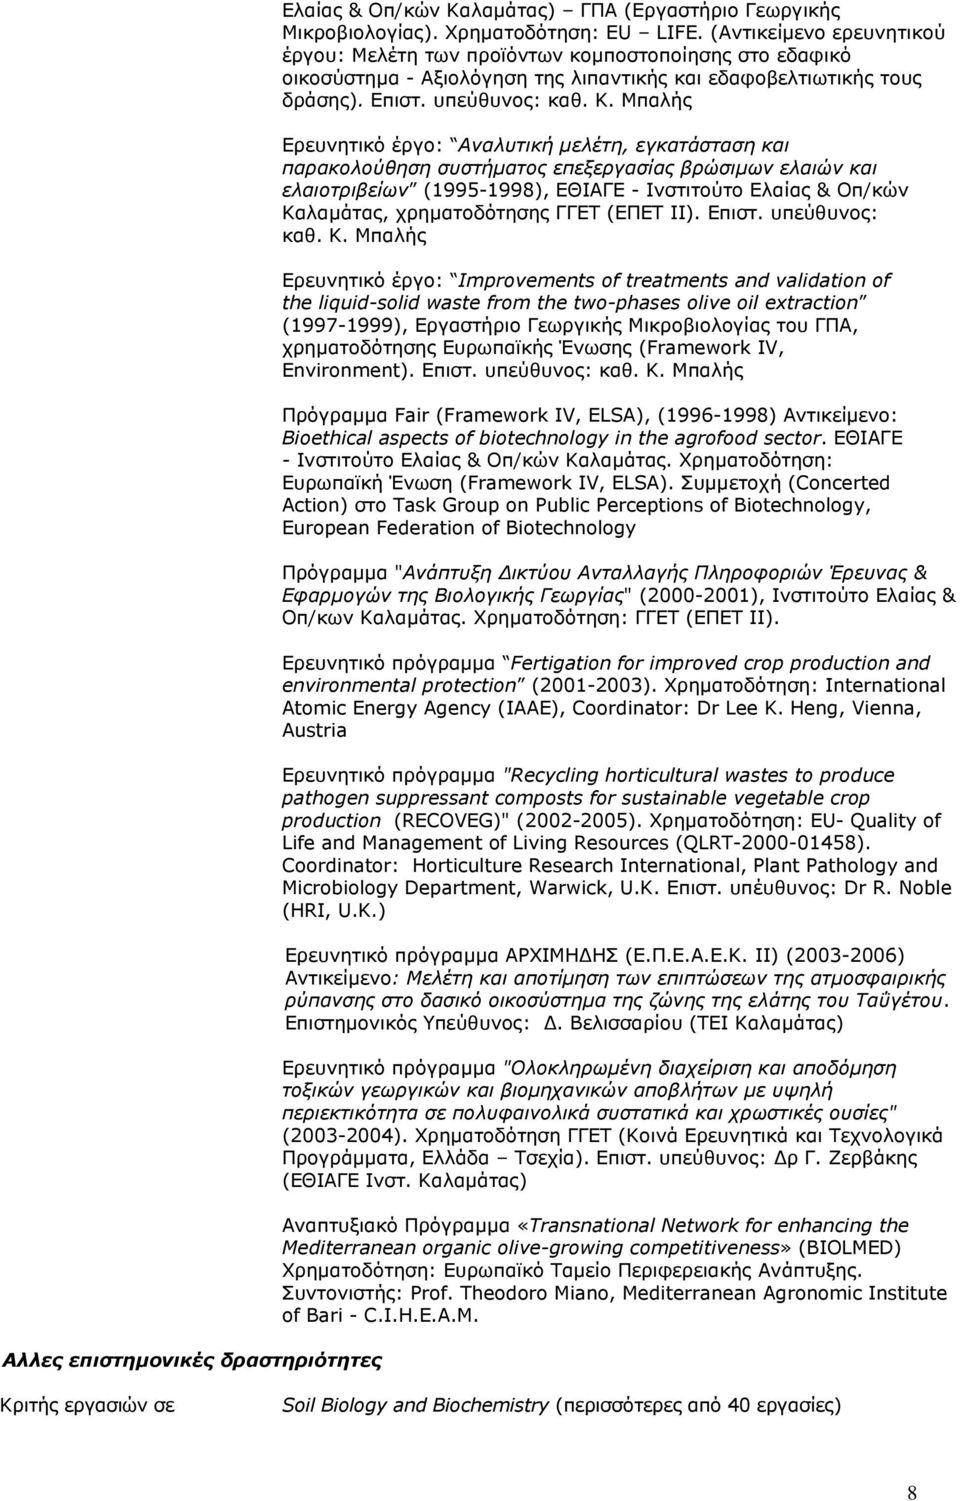 Μπαλής Ερευνητικό έργο: Aναλυτική μελέτη, εγκατάσταση και παρακολούθηση συστήματος επεξεργασίας βρώσιμων ελαιών και ελαιοτριβείων (1995-1998), EΘIAΓE - Iνστιτούτο Eλαίας & Oπ/κών Kαλαμάτας,